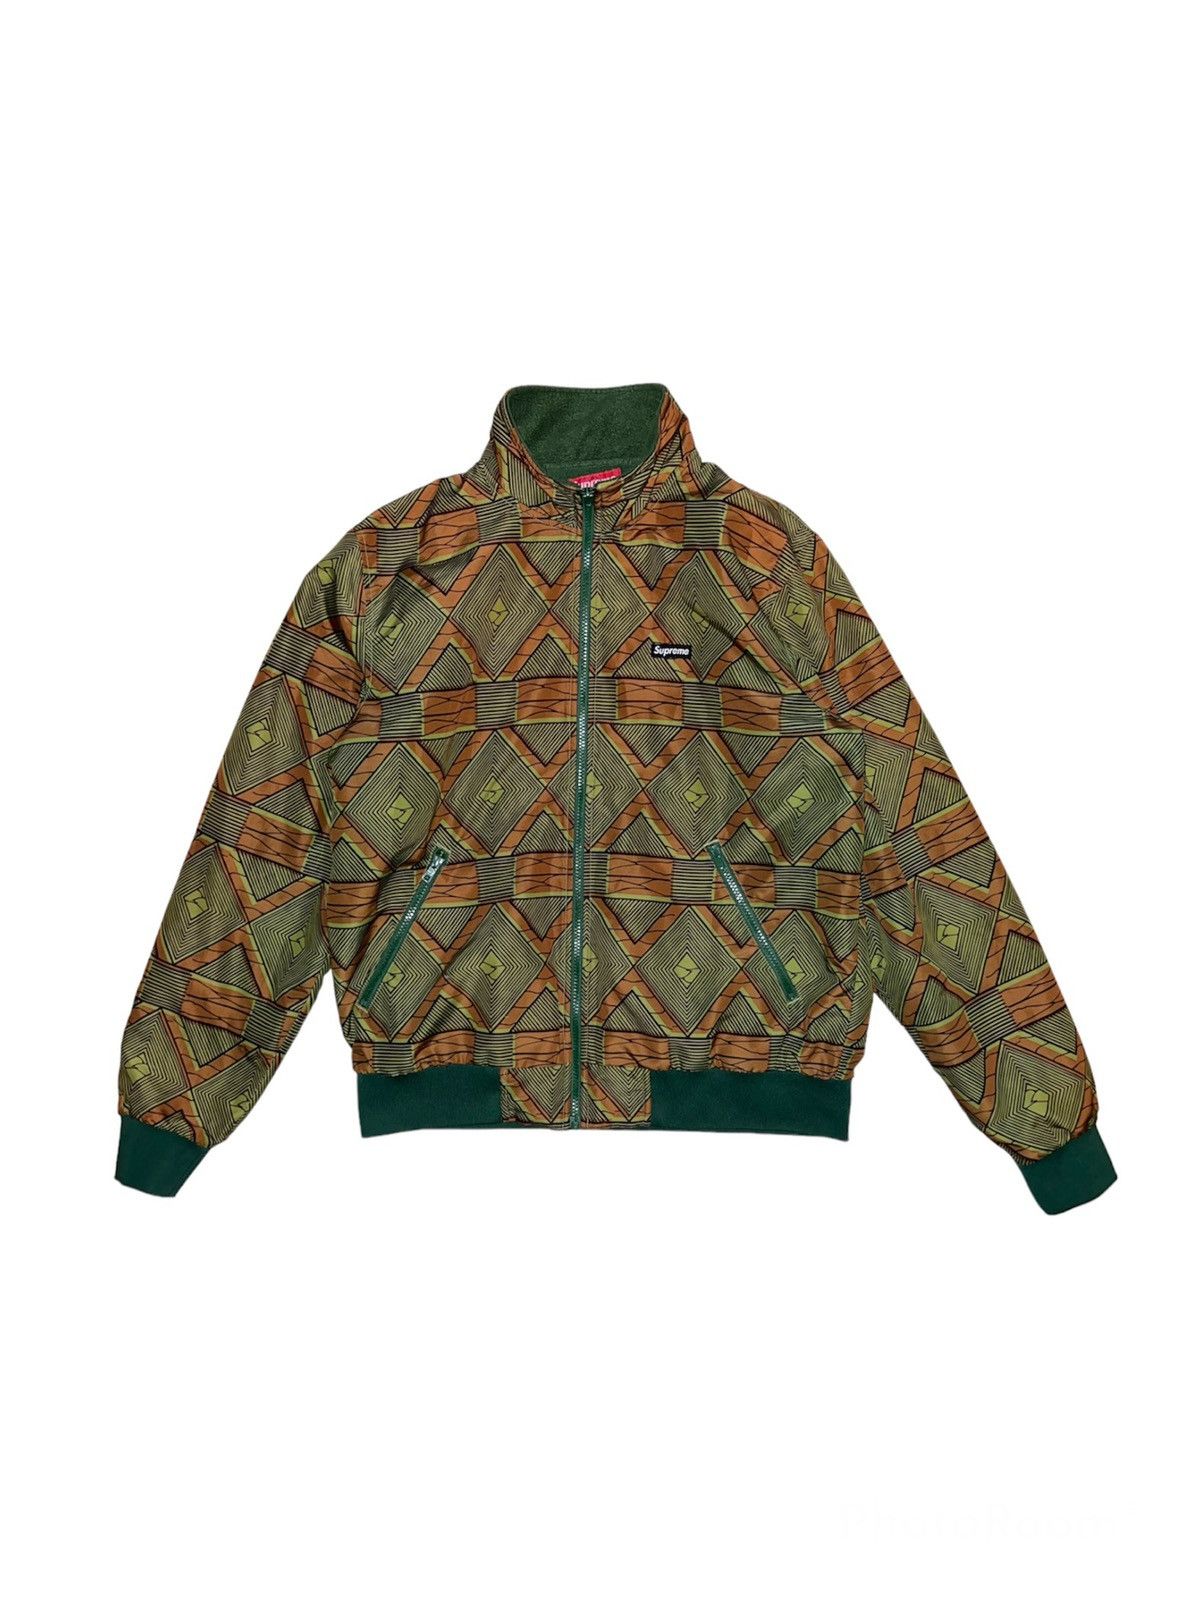 Supreme Supreme African Tribal Windbreaker Fleece Jacket | Grailed